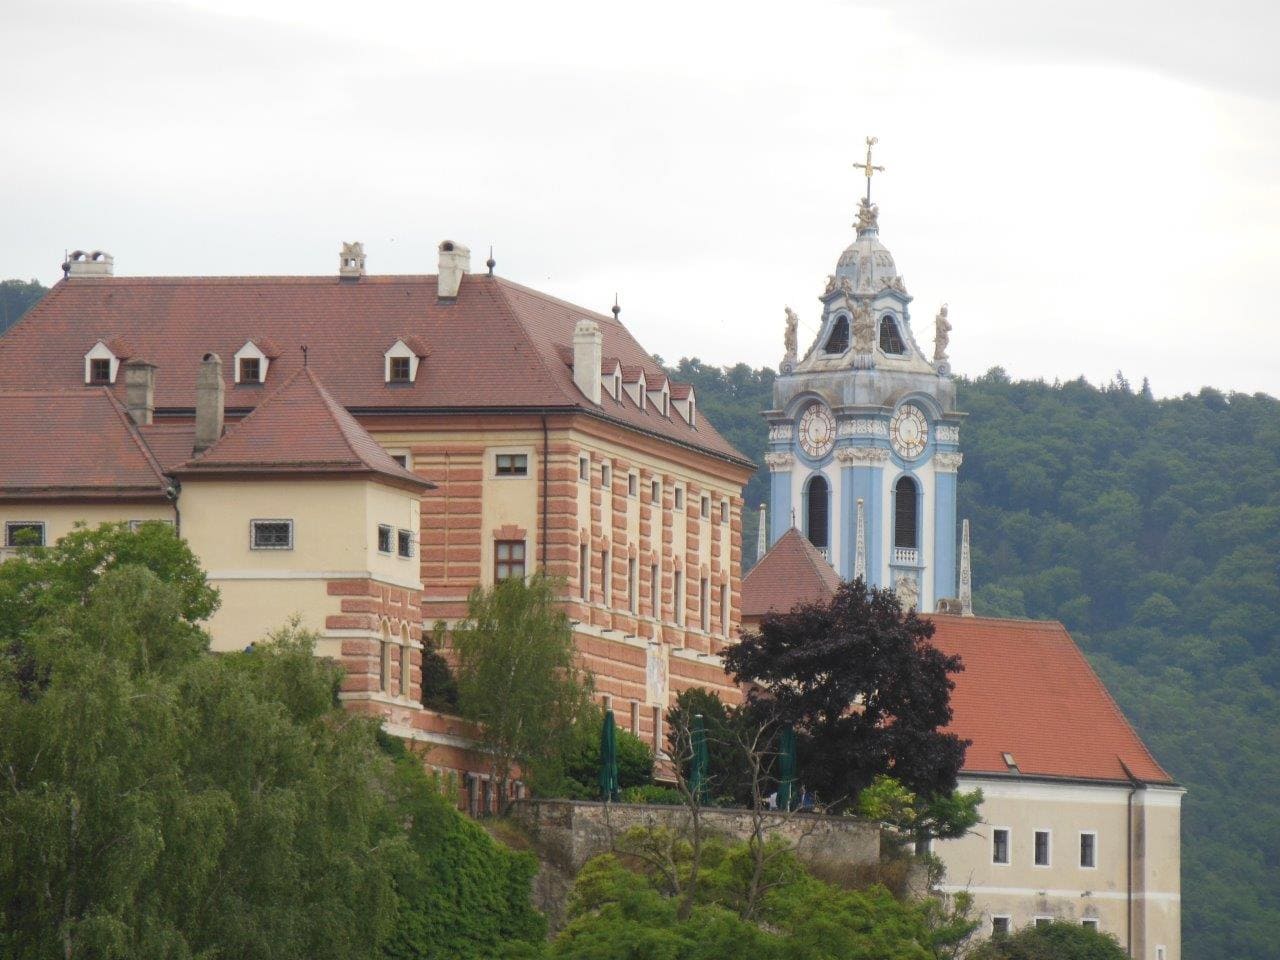 Chateau de Durnstein